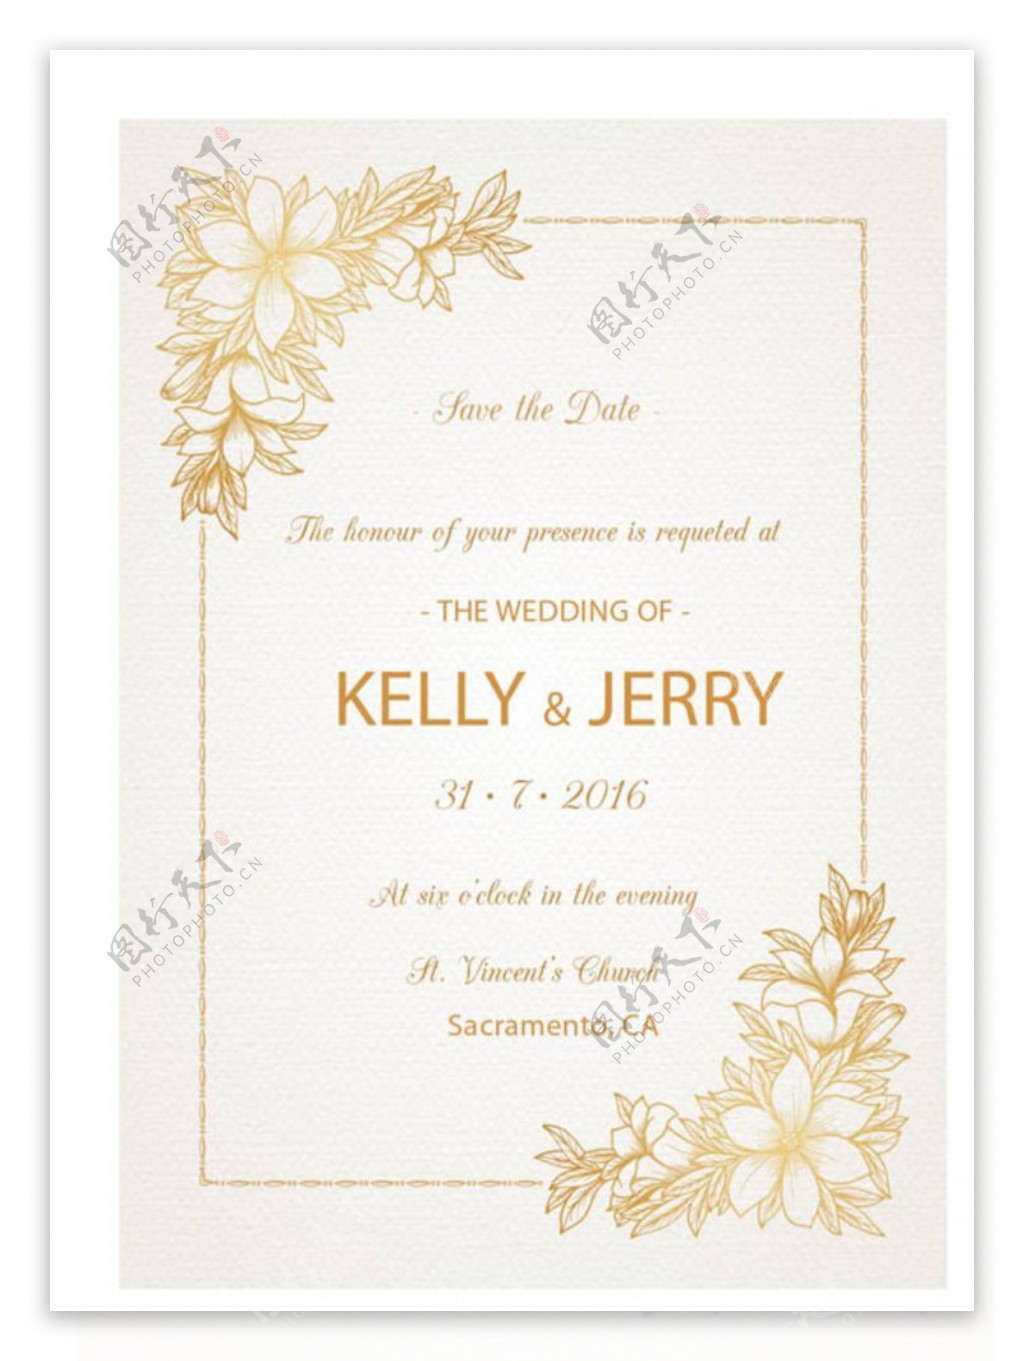 特种纸金色花朵婚礼邀请卡